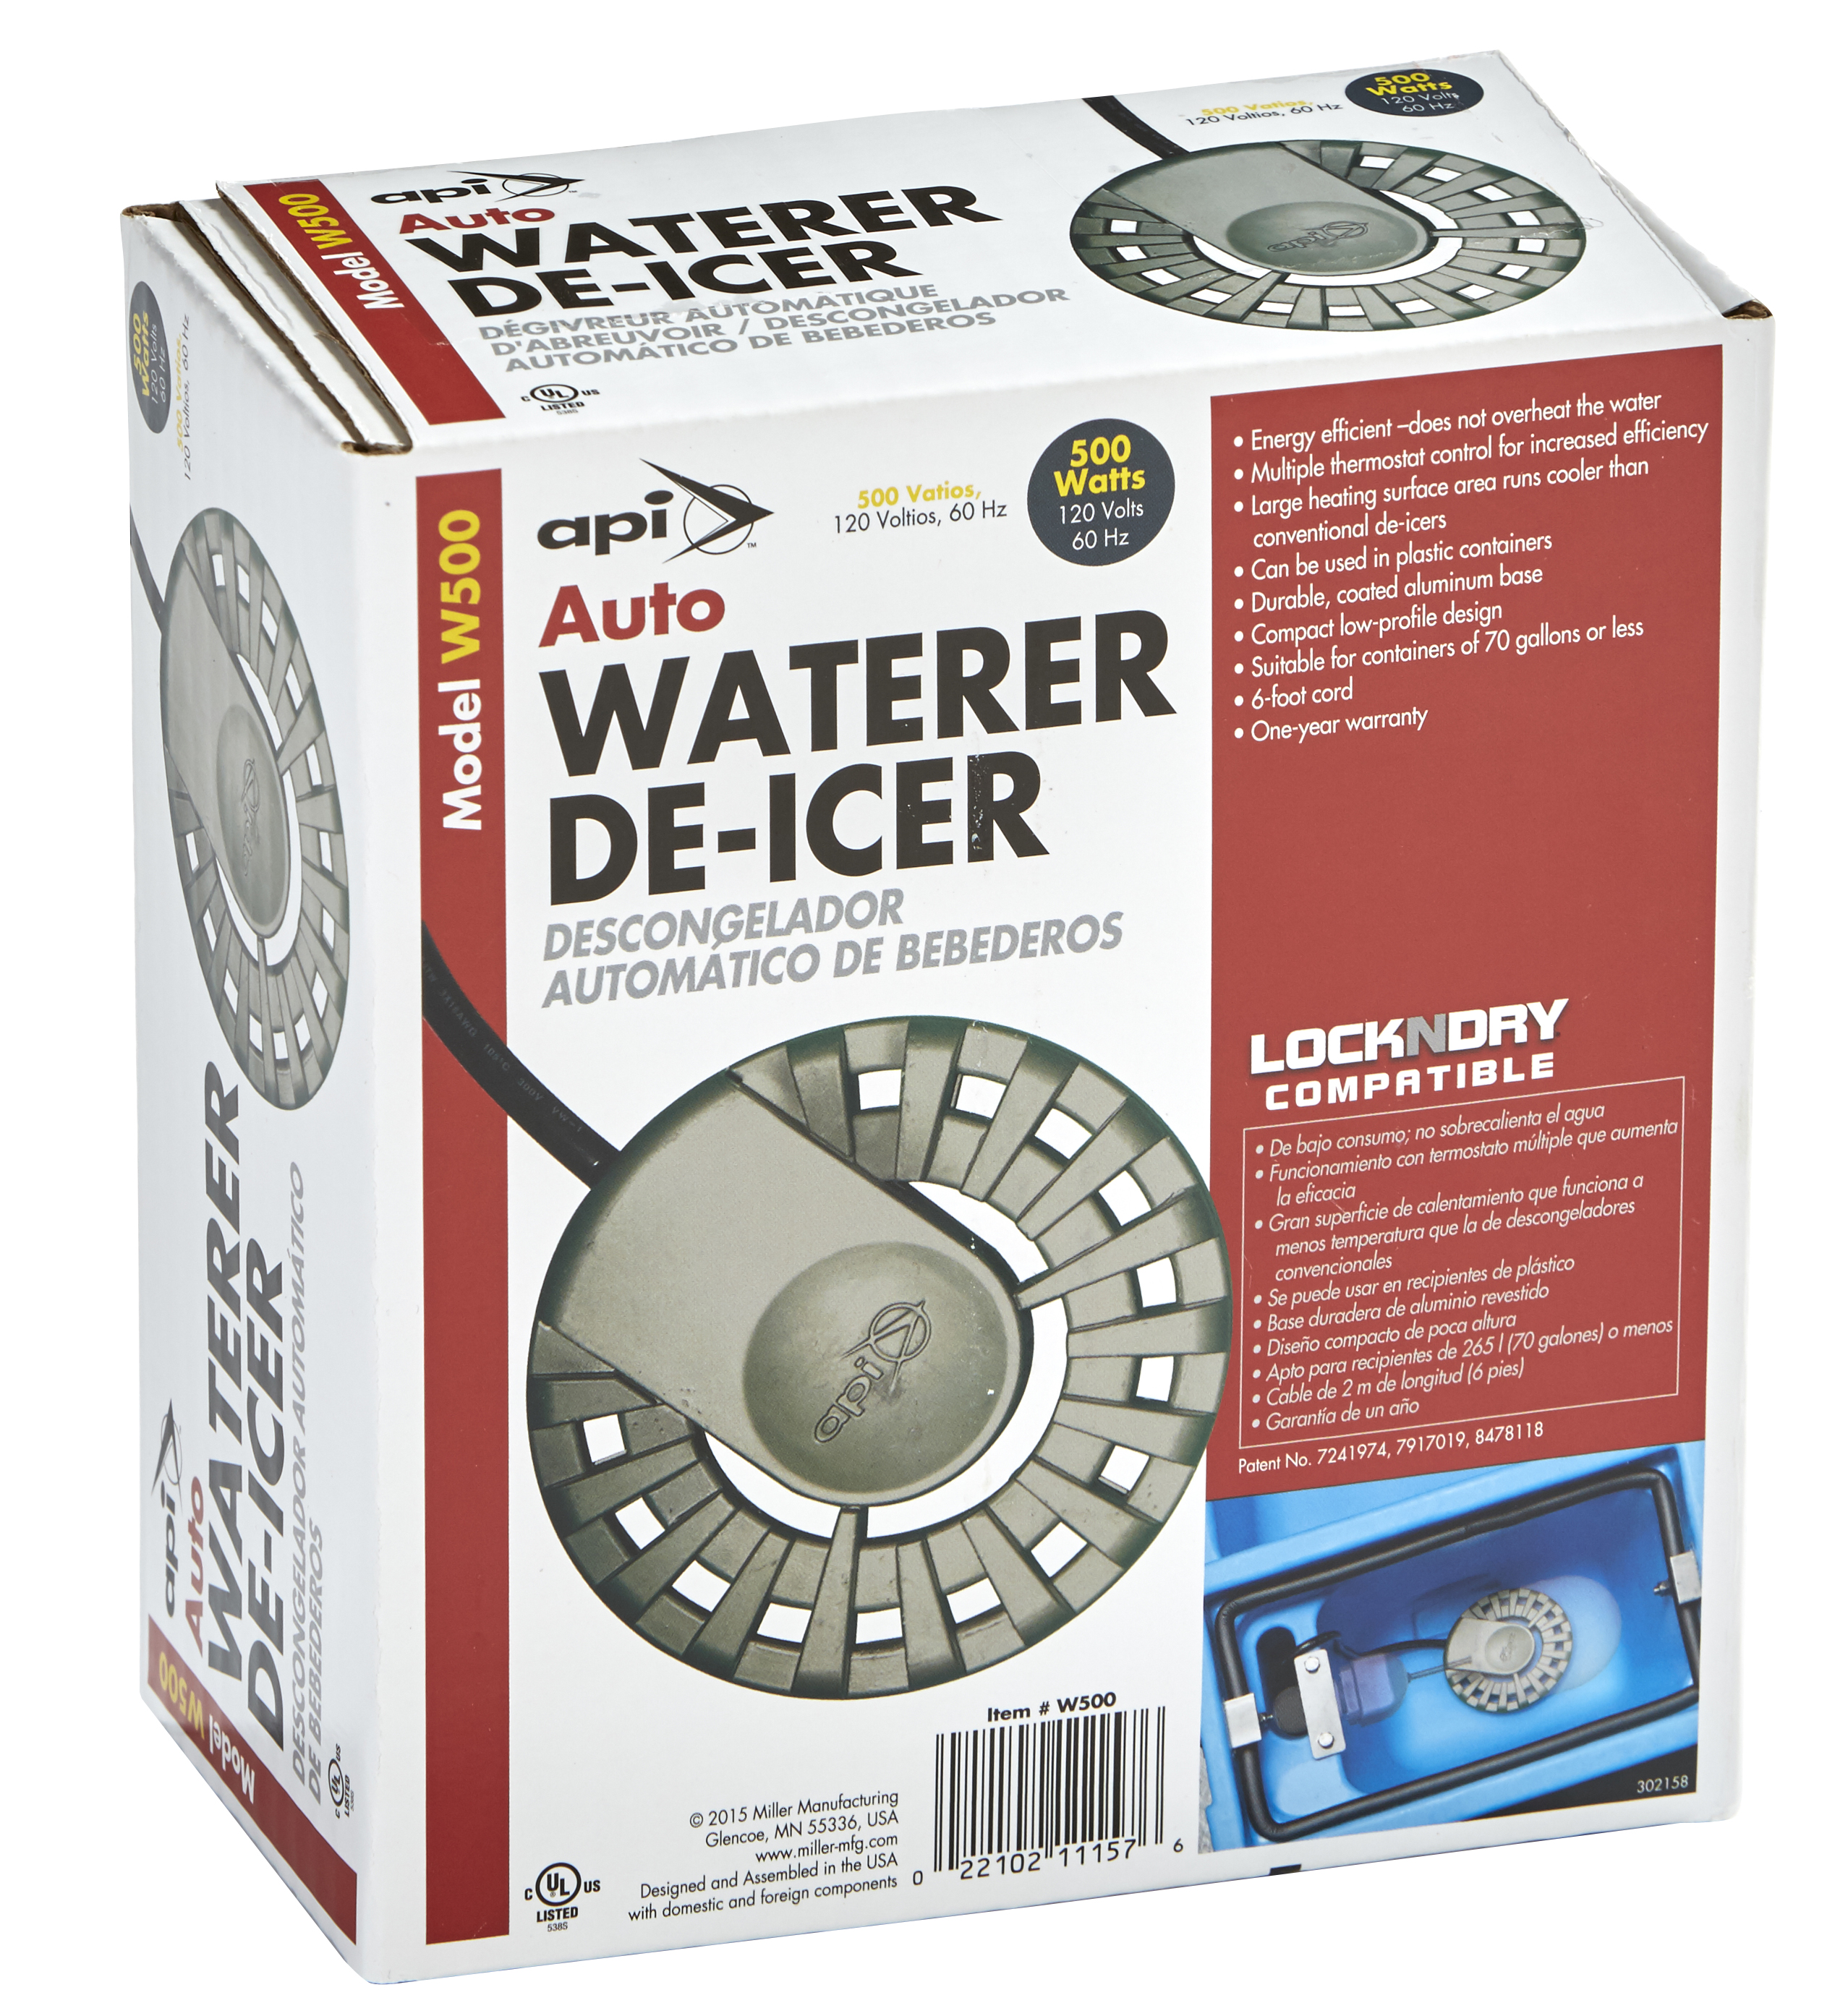 500 Watt Auto Waterer De-Icer